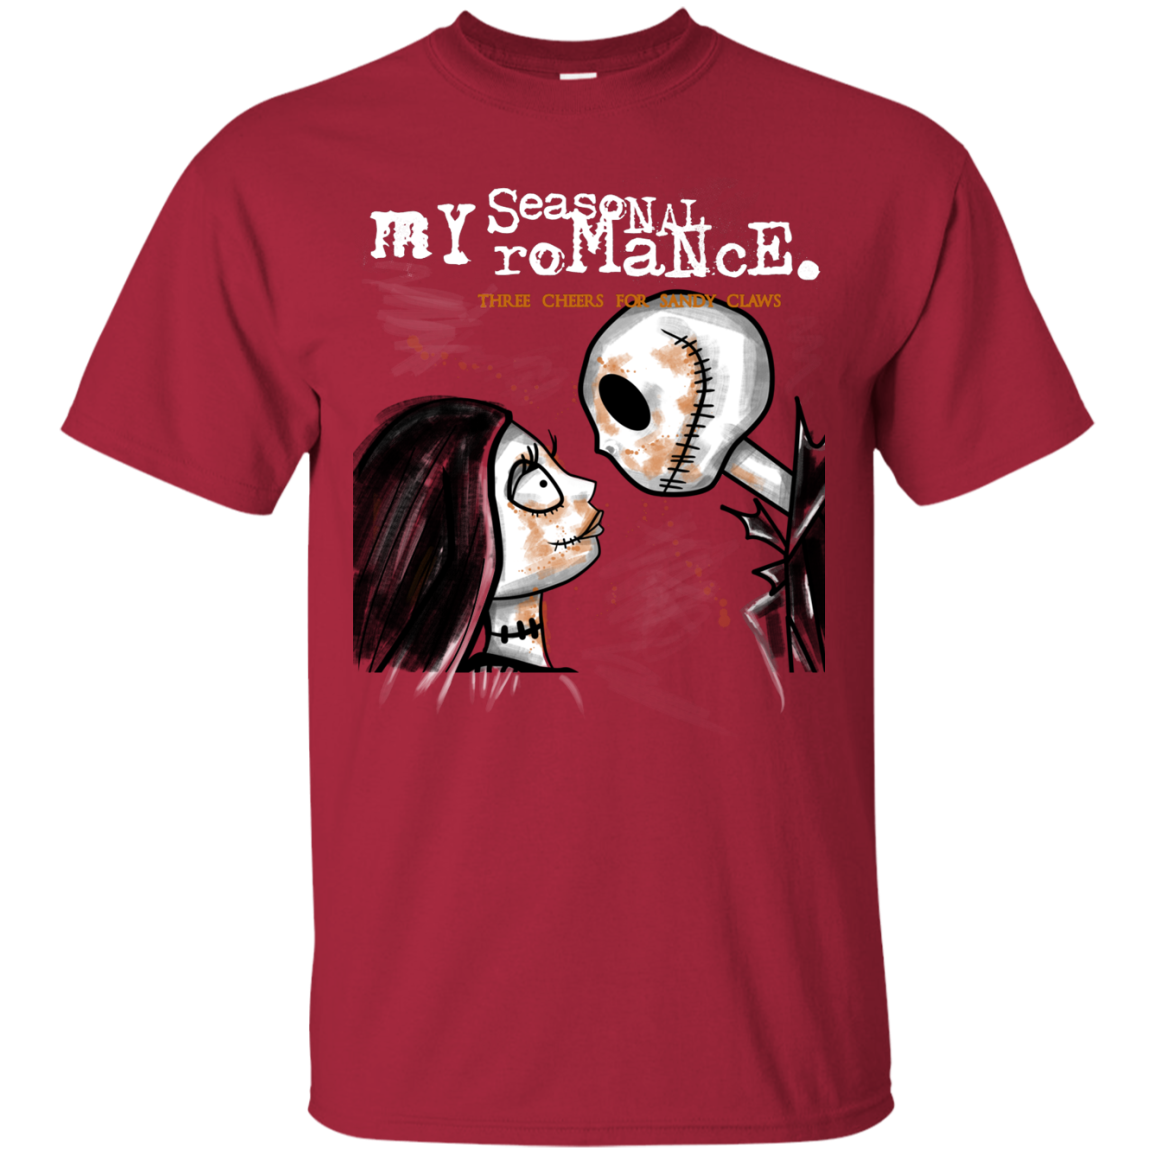 MY SEASONAL ROMANCE T-Shirt